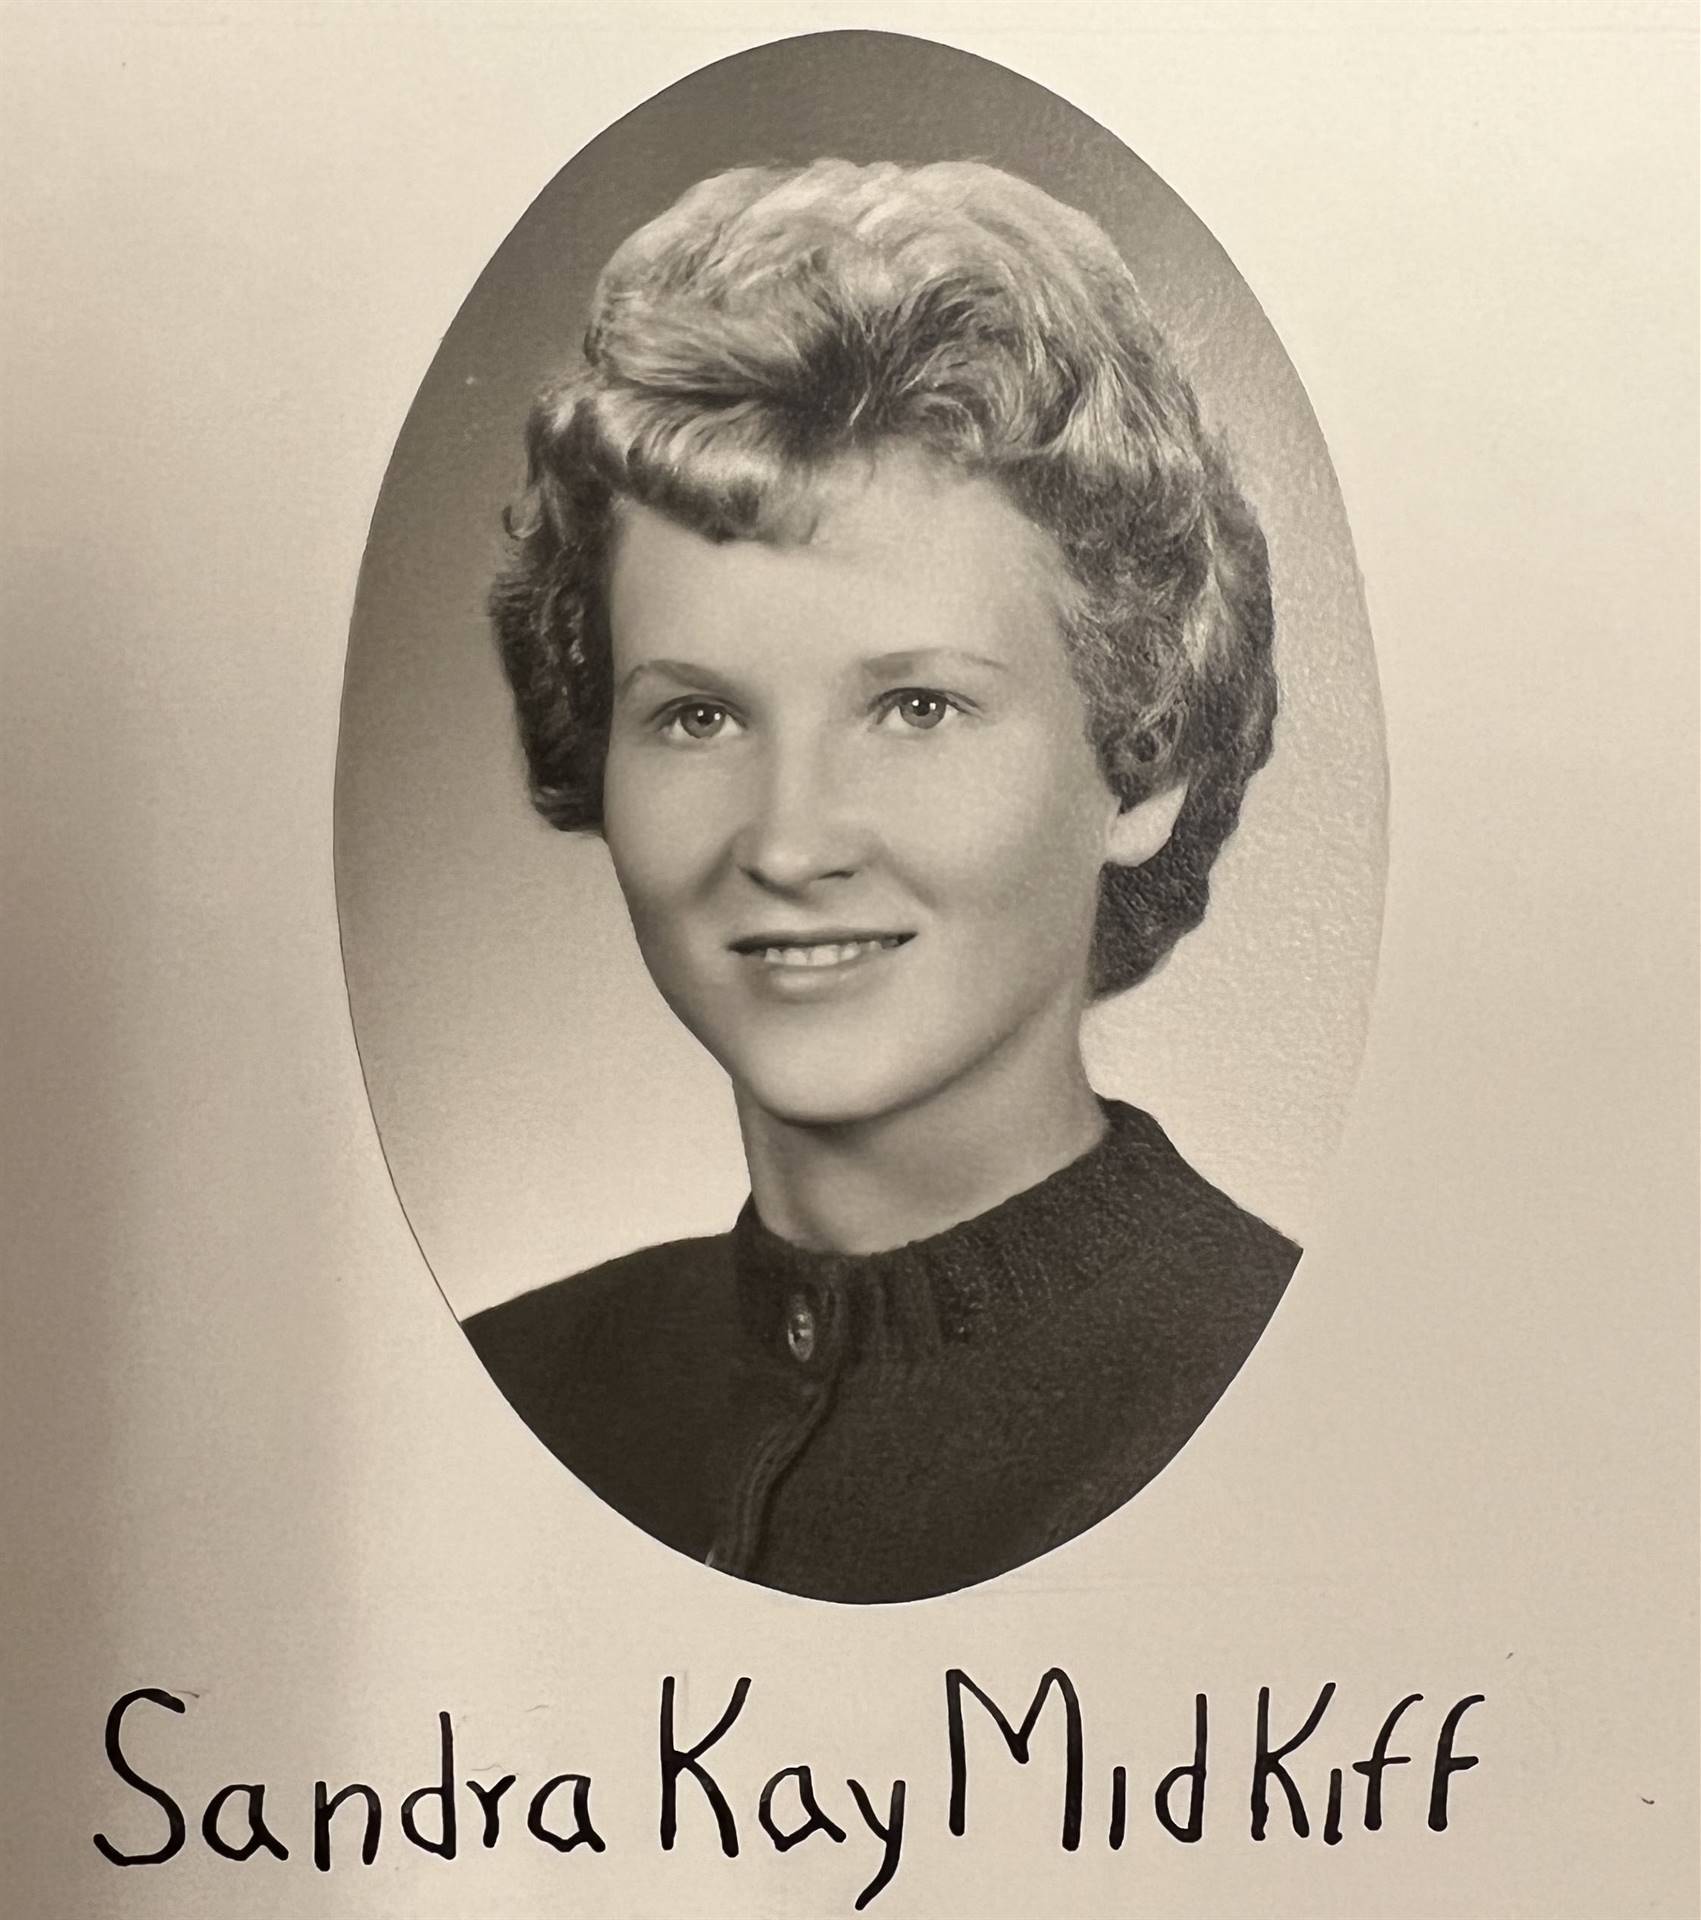 Sandra Kay Midkiff